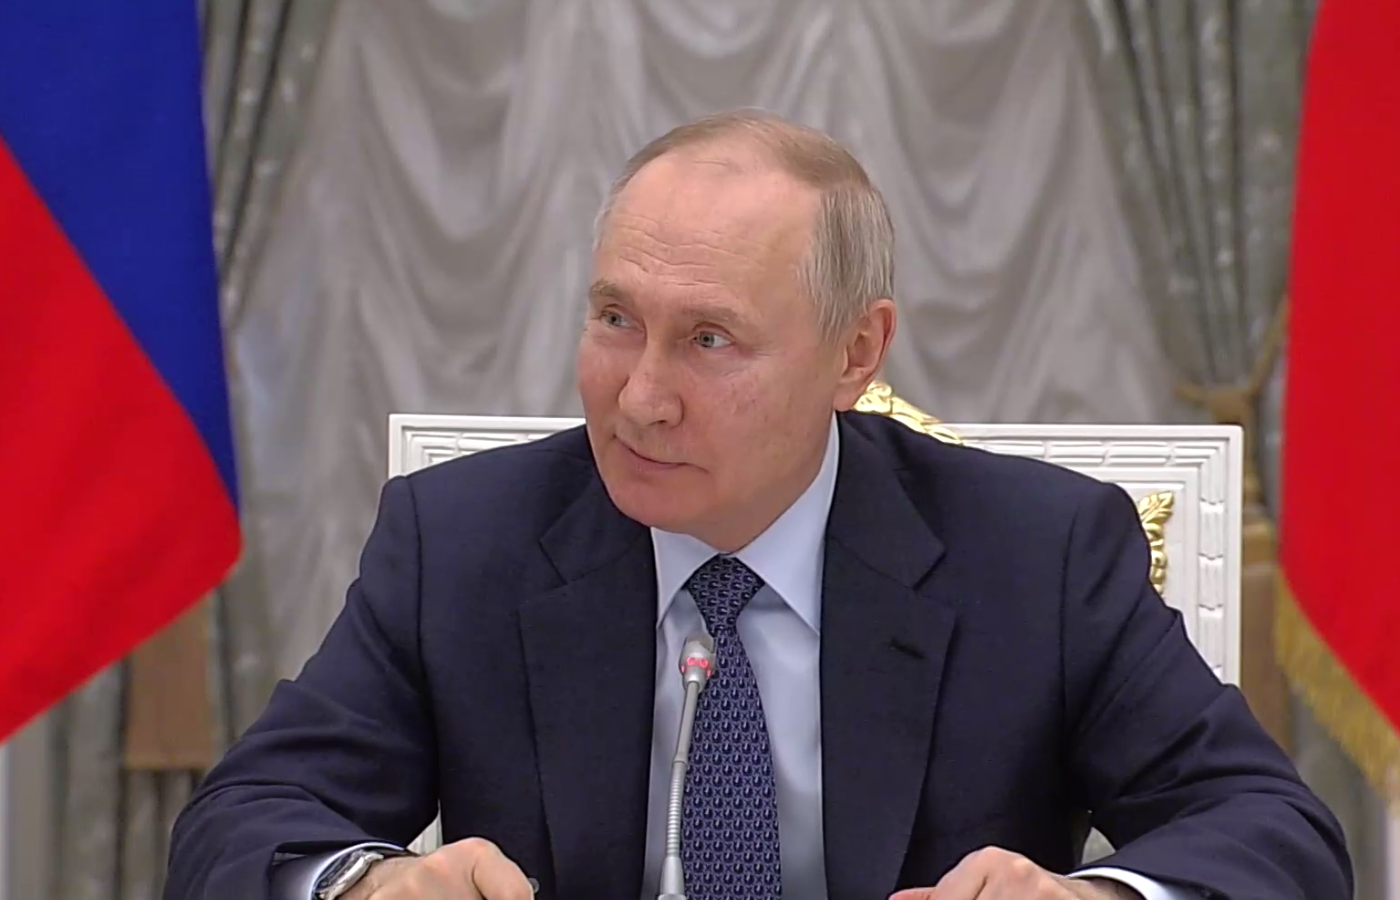 "Москва, Кремль": Путин шуткой "ответил" на неожиданный звонок во время заседания